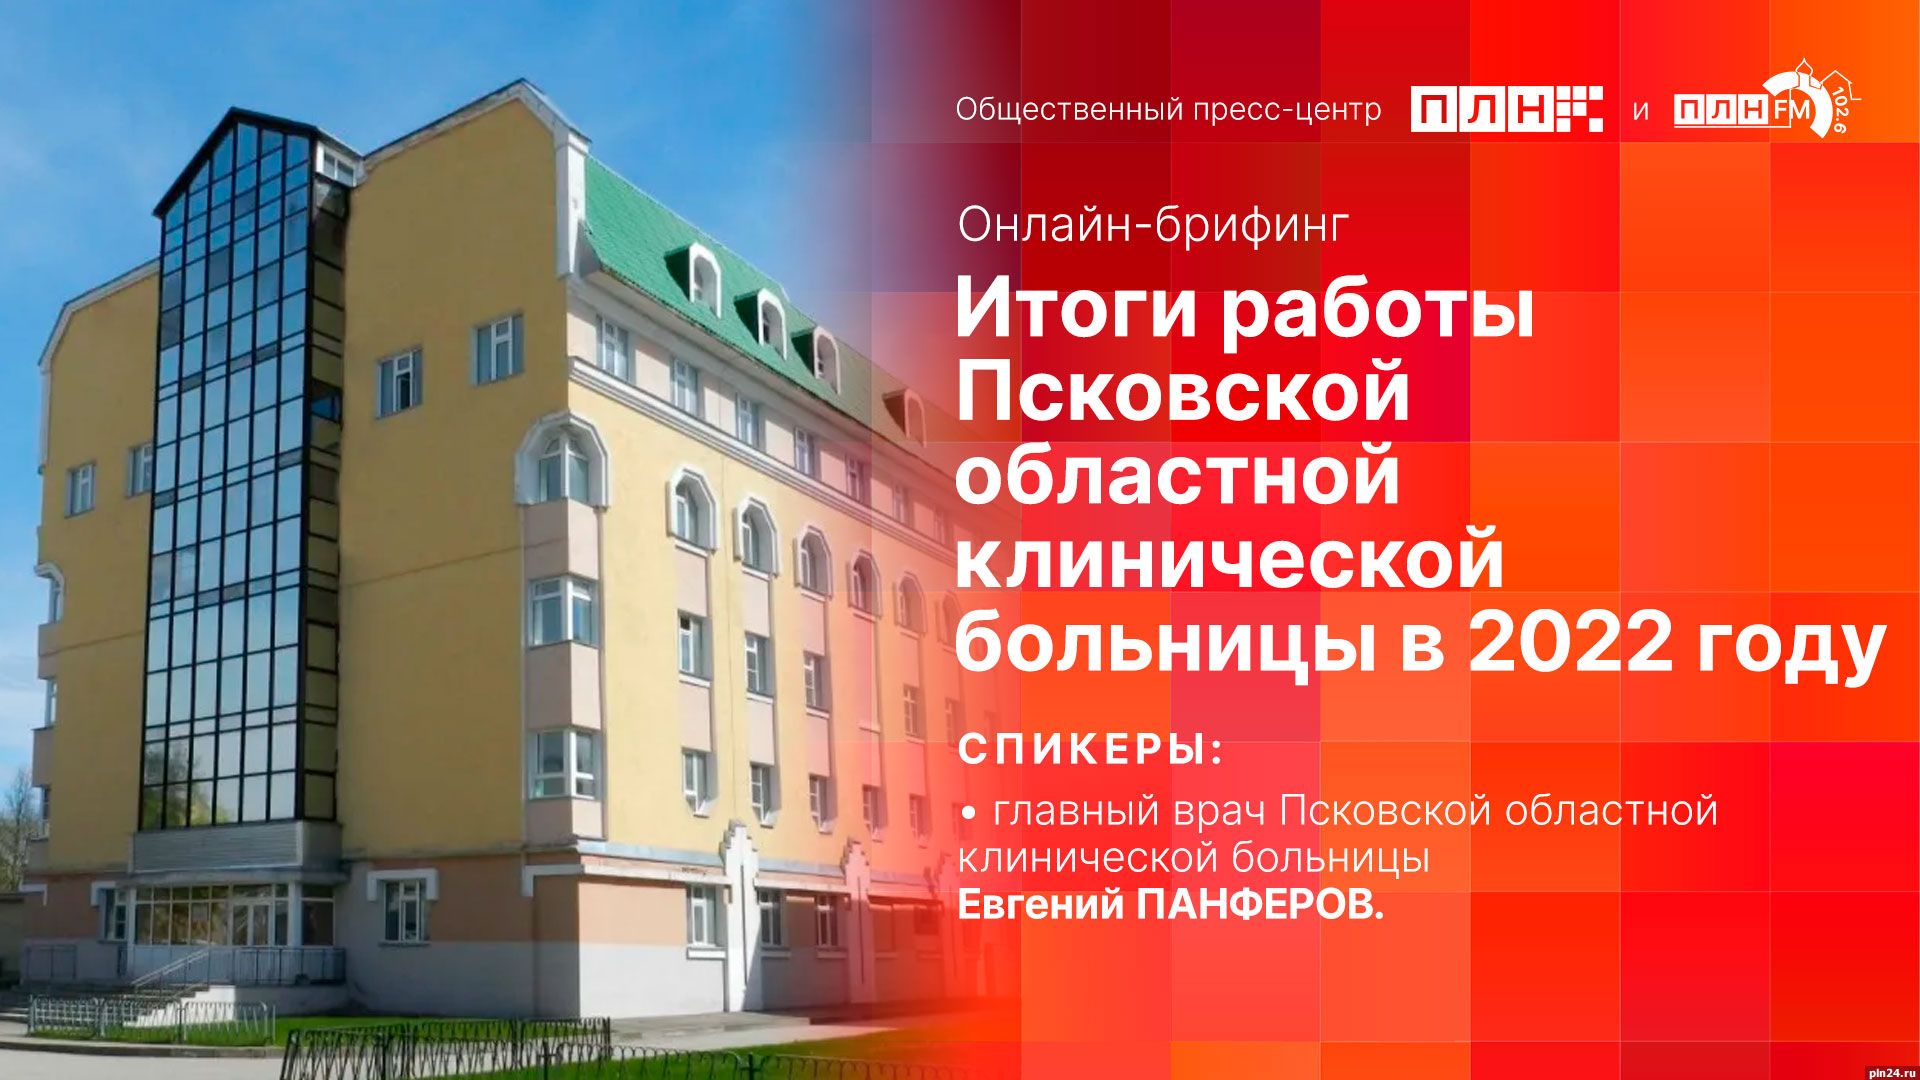 Начинается видеотрансляция онлайн-брифинга с главным врачом Псковской областной больницы